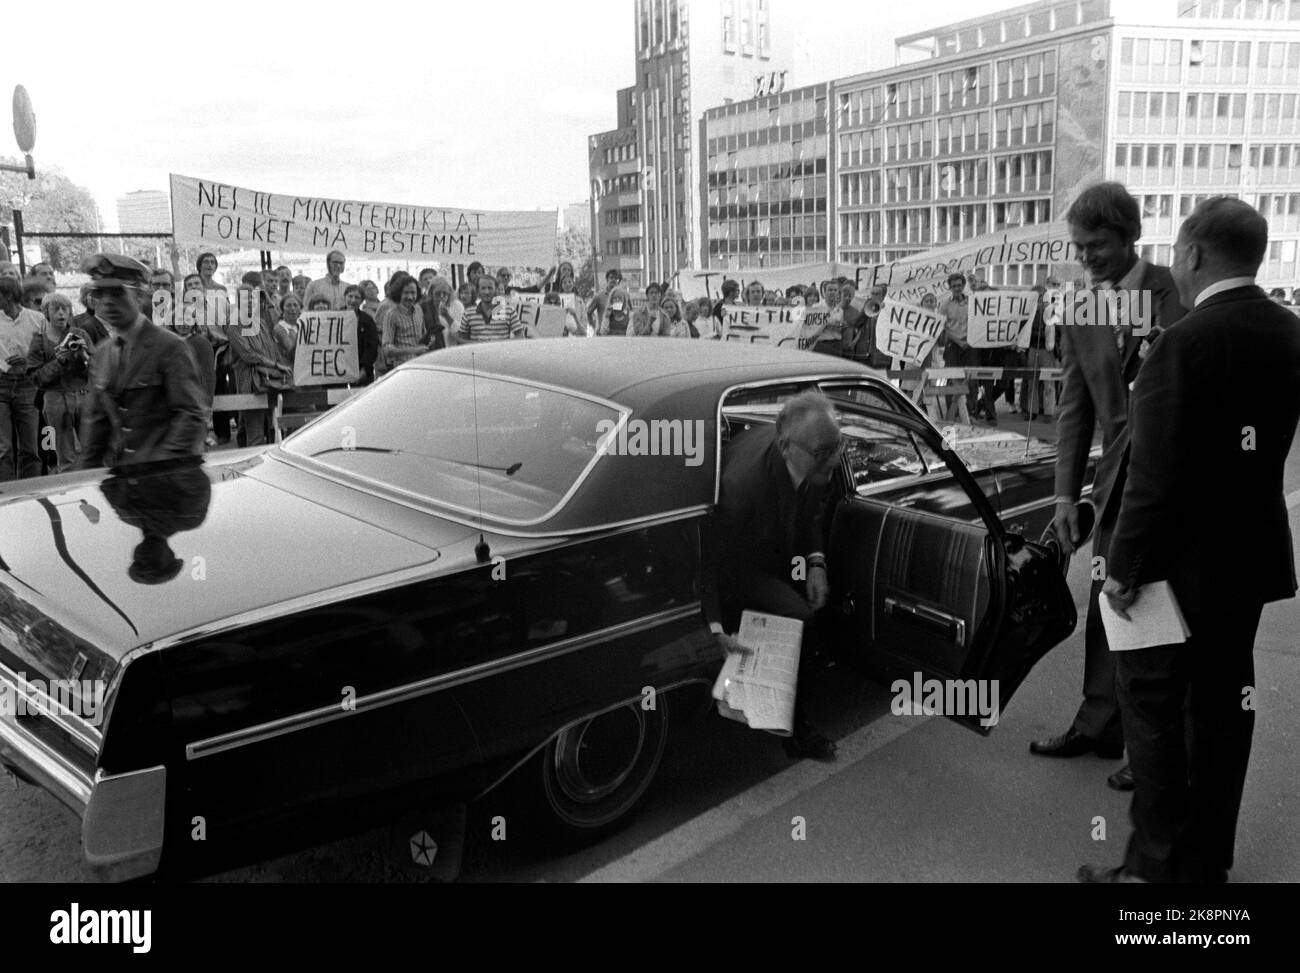 Oslo 19710722 der französische Außenminister Maurice Schumann kommt nach Oslo, um mit norwegischen Politikern die Fragen der EWG/EG zu diskutieren. Hier kommt Scumann zu einem Treffen. Er wird von Demonstranten getroffen, die gegen die EWG demonstrieren. Auf den Postern steht: "Nein zum Ministerstaat, die Menschen müssen entscheiden" und "Nein zur EWG" Foto: NTB / NTB Stockfoto